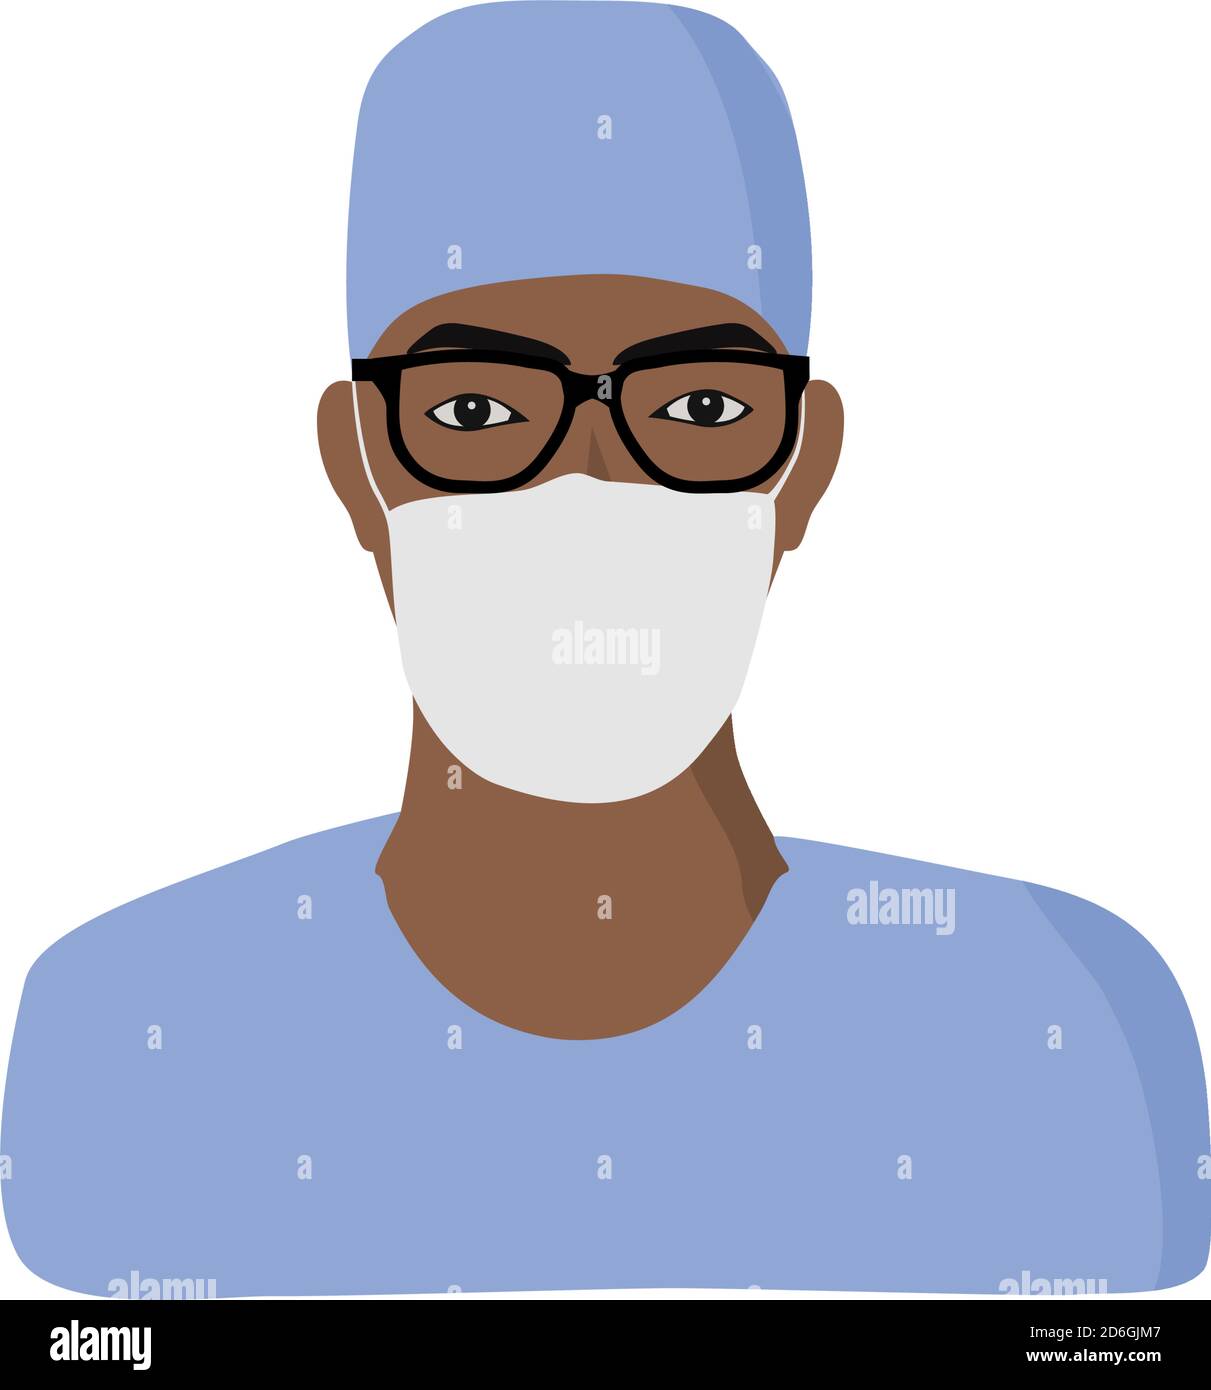 Afrikanisch, afroamerikanisch Ethnizität Mann Krankenschwester, Arzt. Krankenhausmitarbeiter in Uniform mit Maske, Kopfhaube und Brille. Stock Vektor